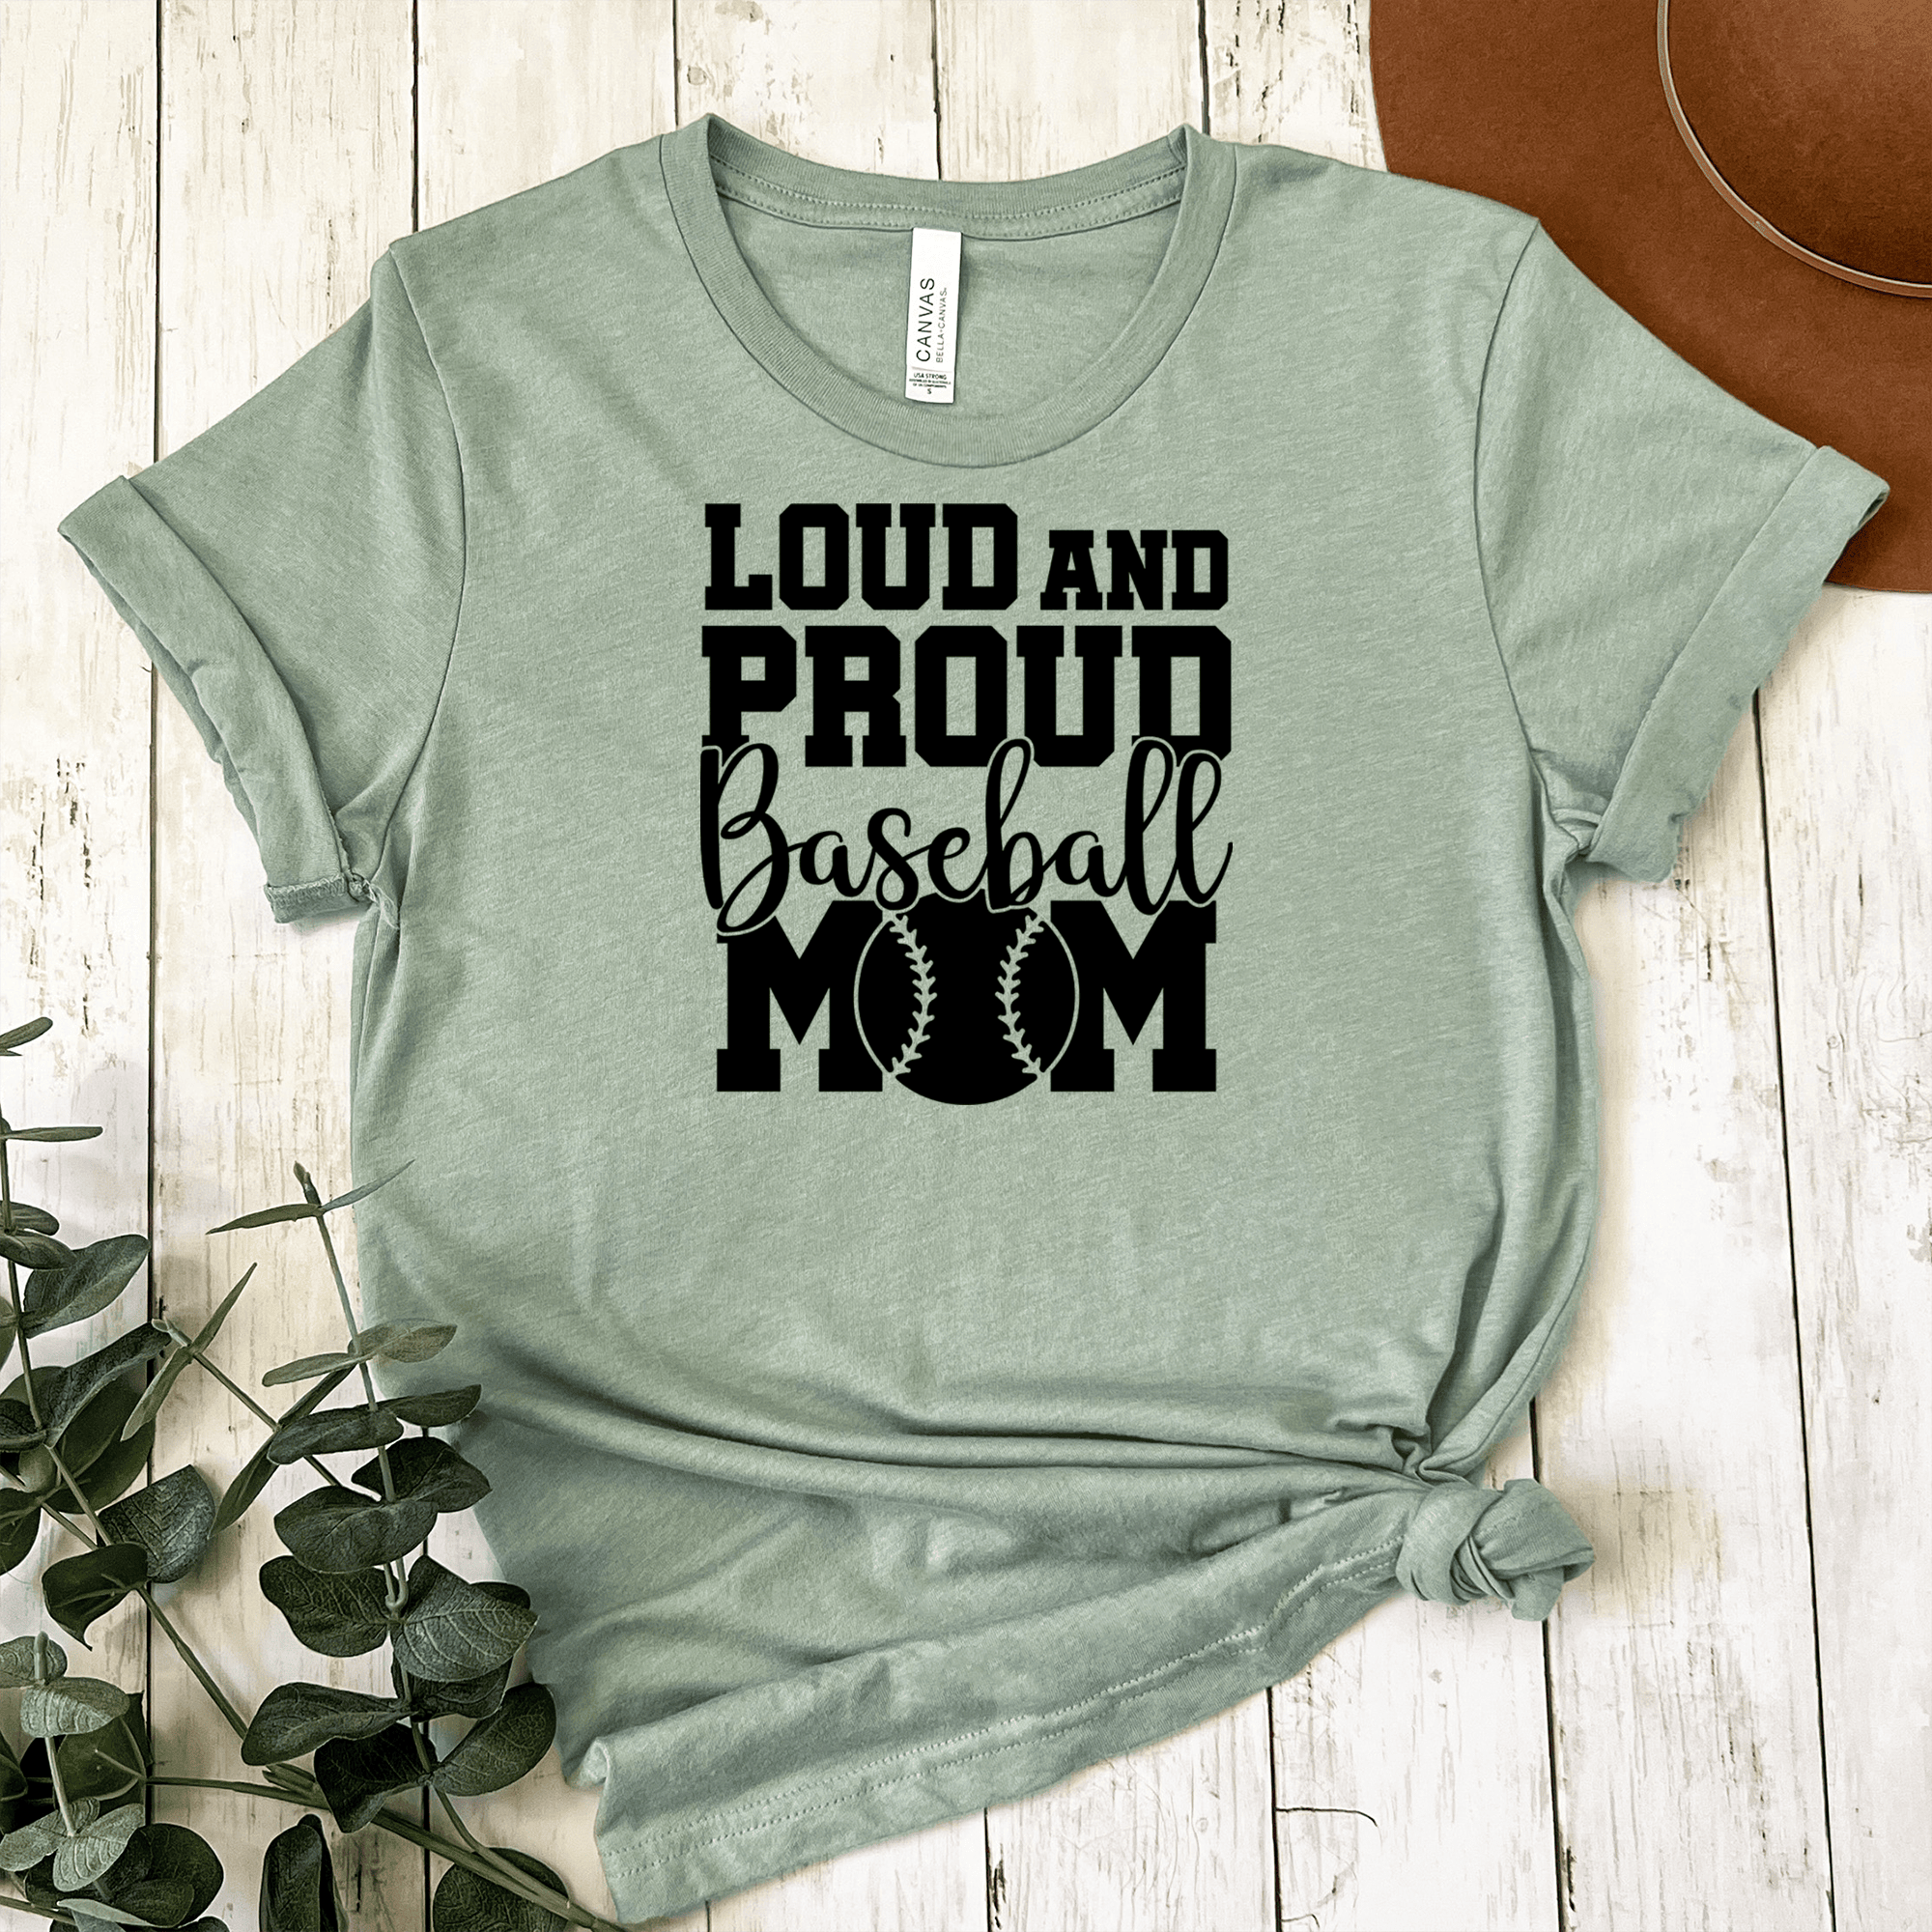 Womens Light Green T Shirt with Loud-Baseball-Mom-Alert design